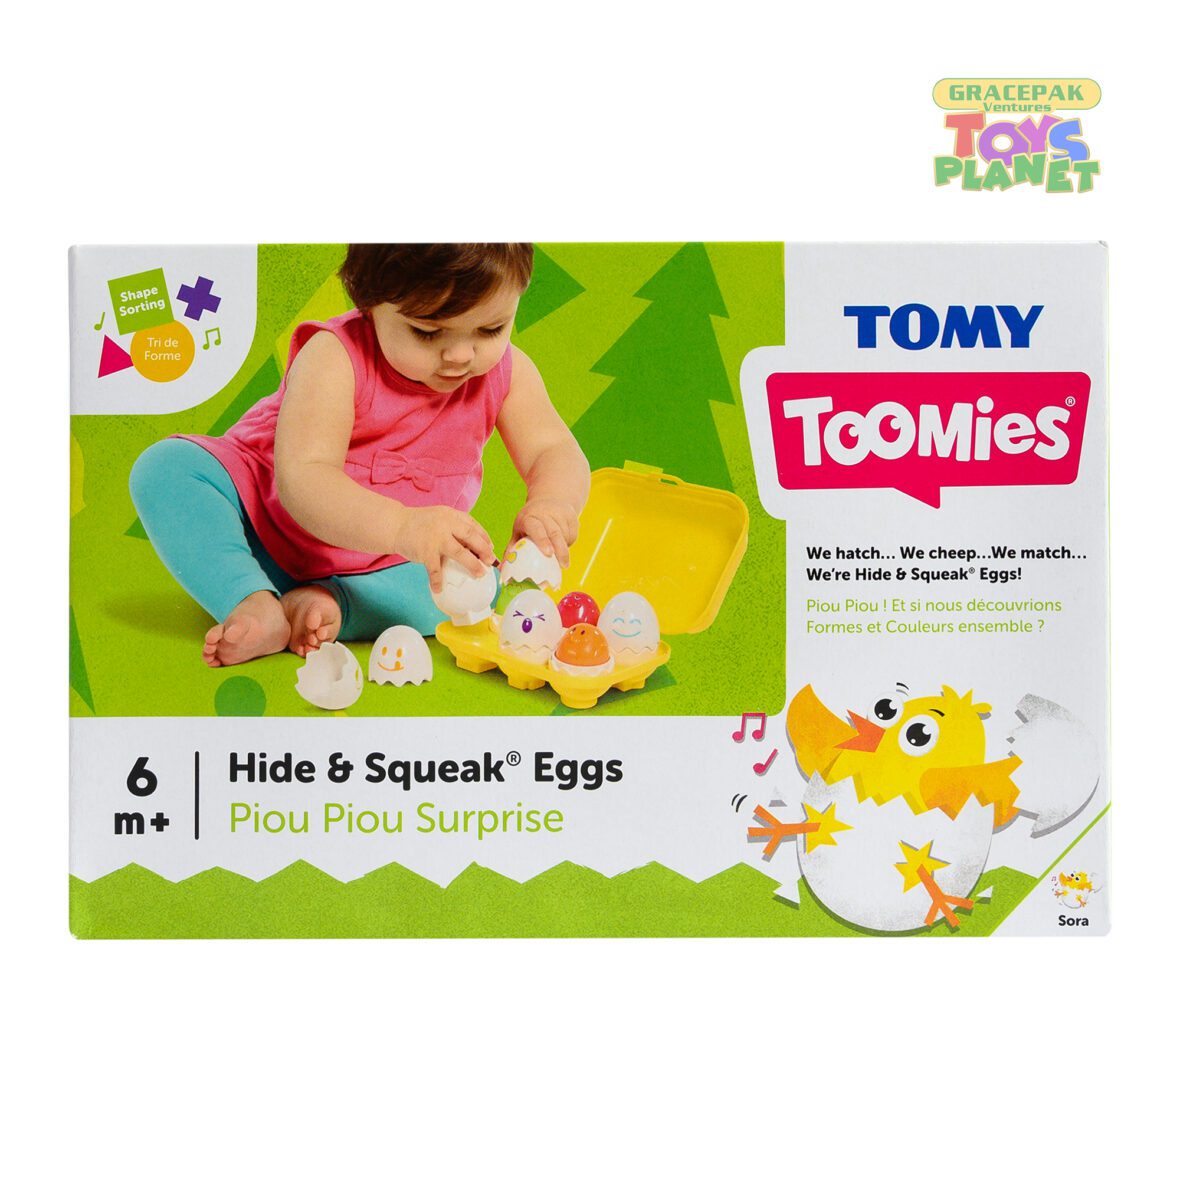 TOMY Toomies Hide and Squeak Eggs